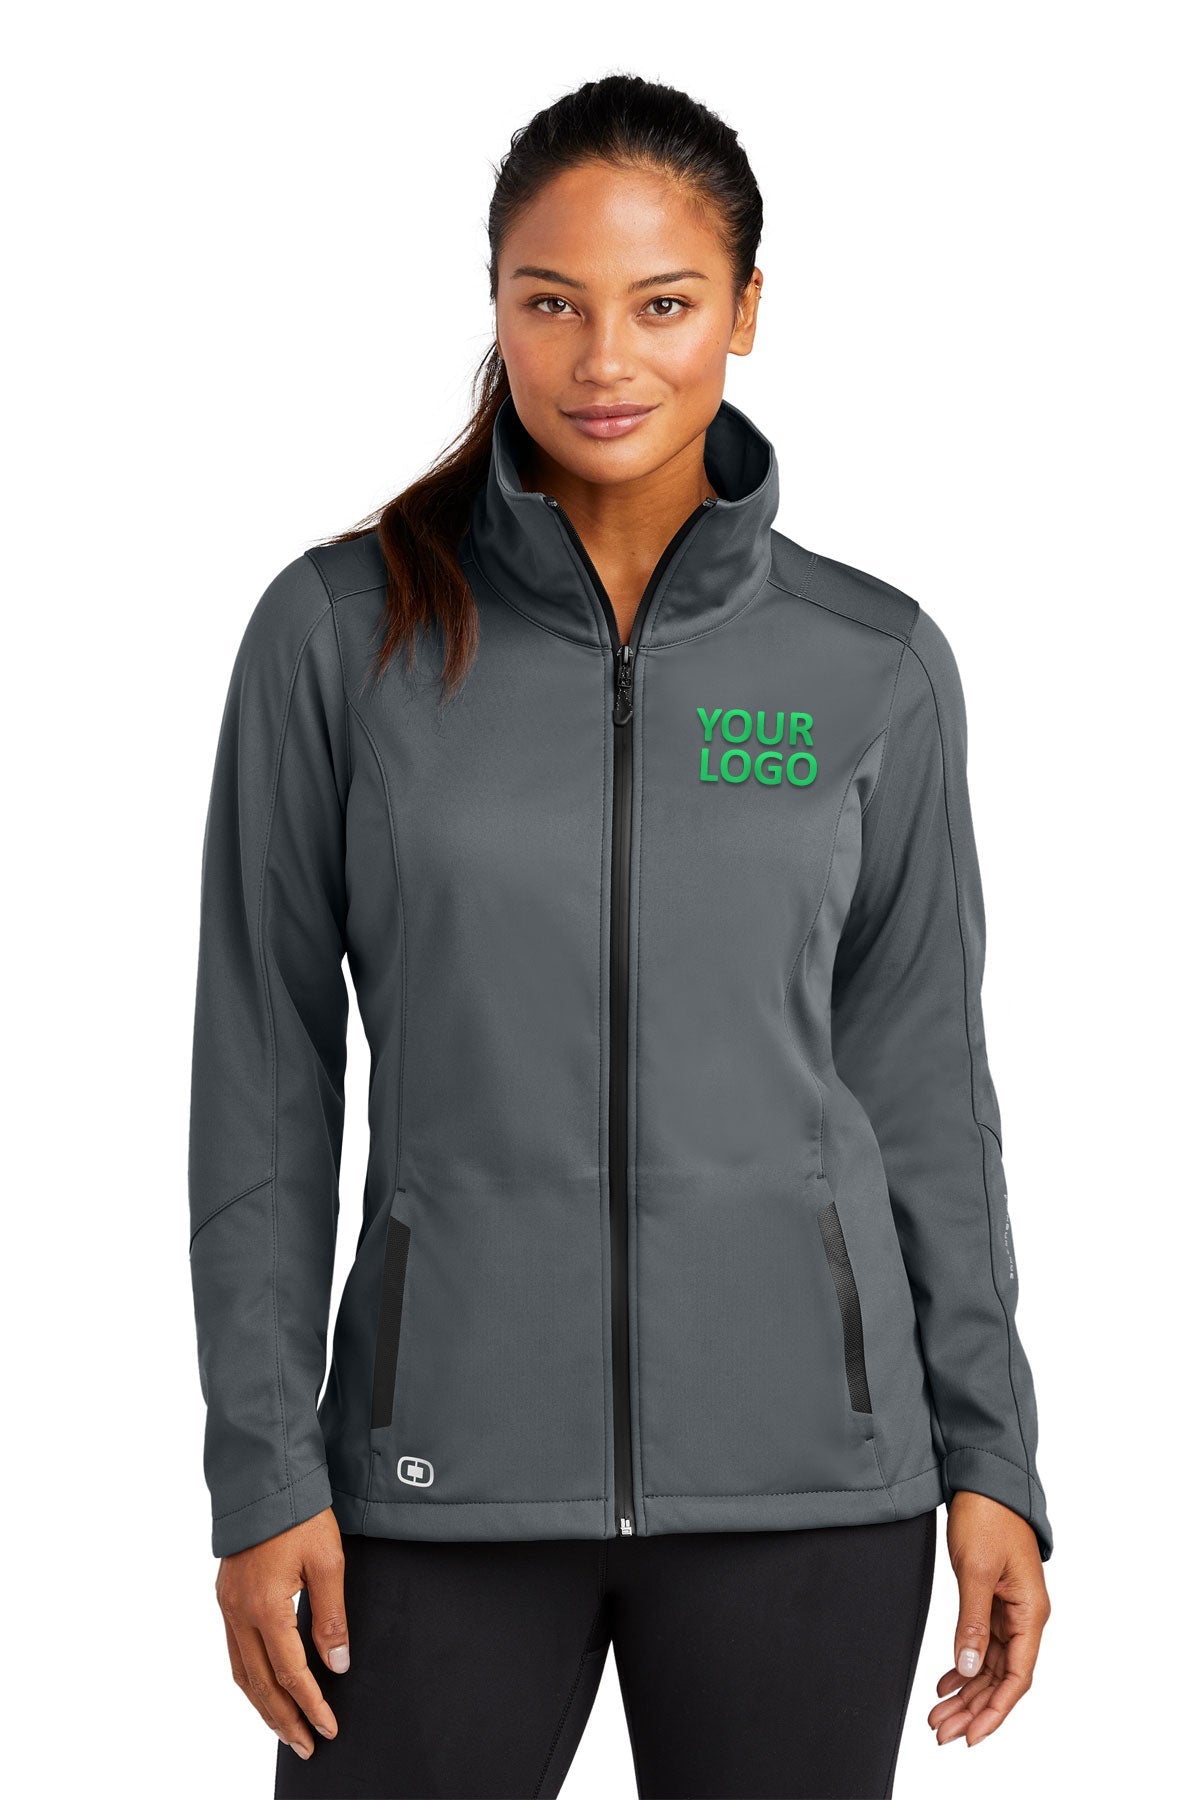 OGIO Endurance Gear Grey LOE720 jackets with company logo